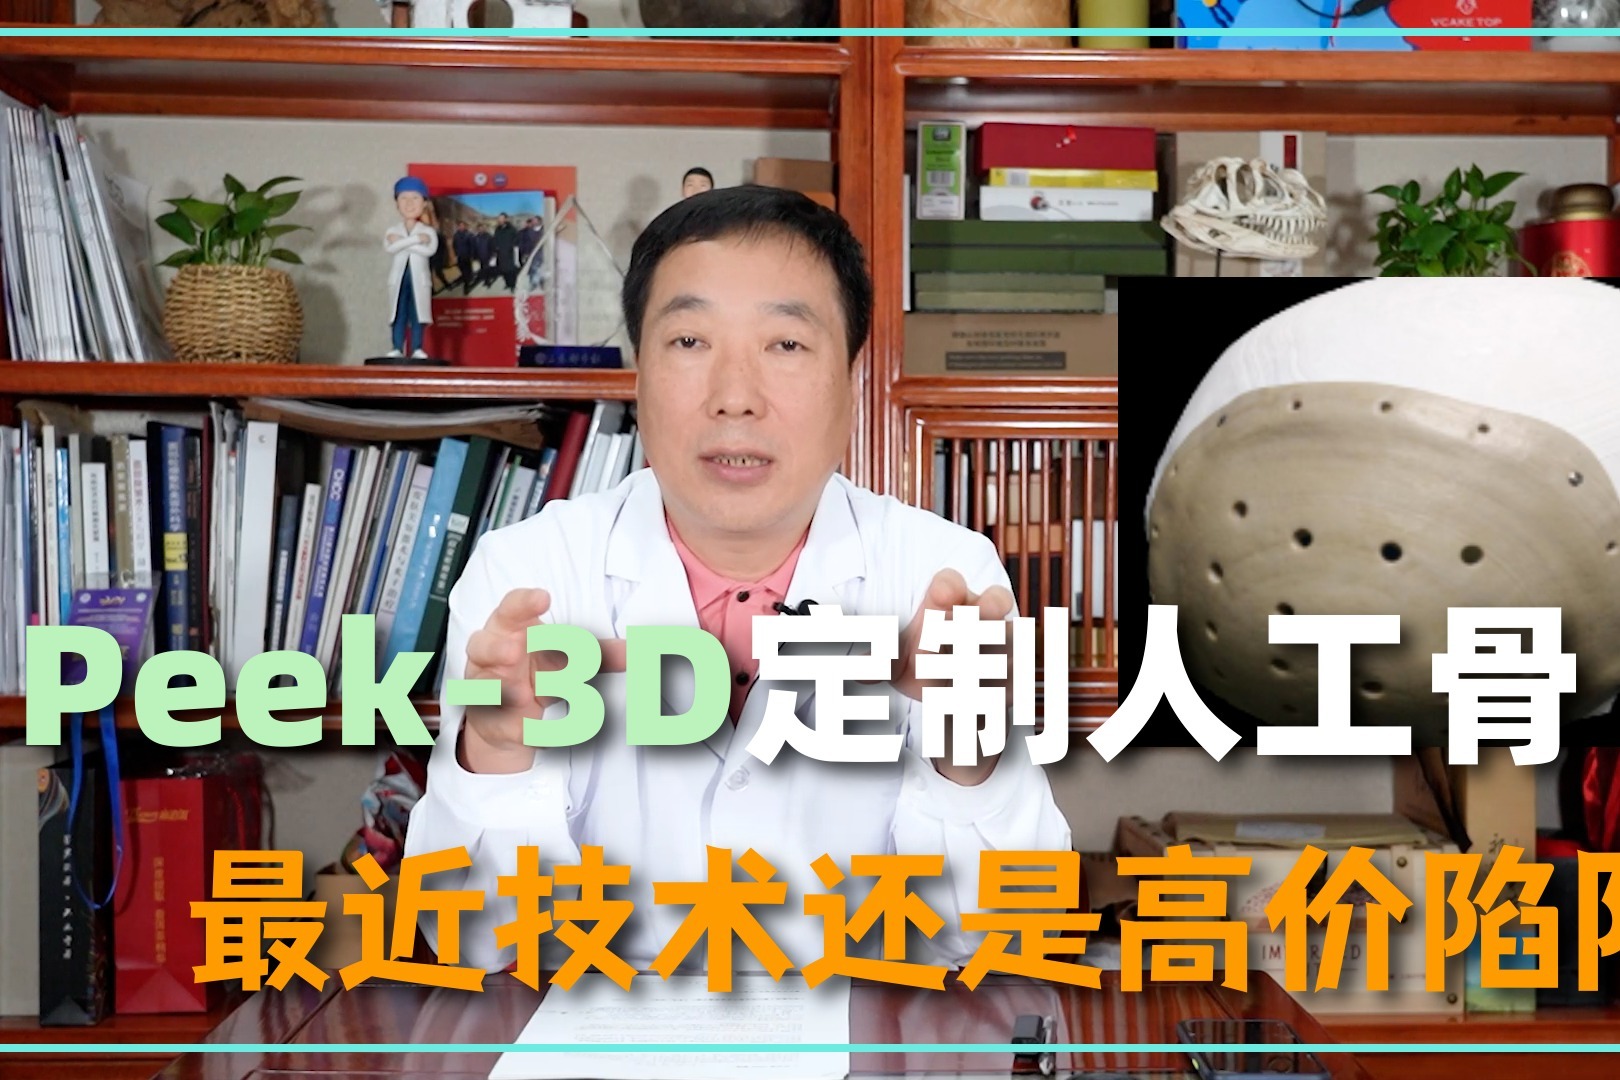 PEEK-3D定制人工骨，究竟是最新技术还是高价噱头？